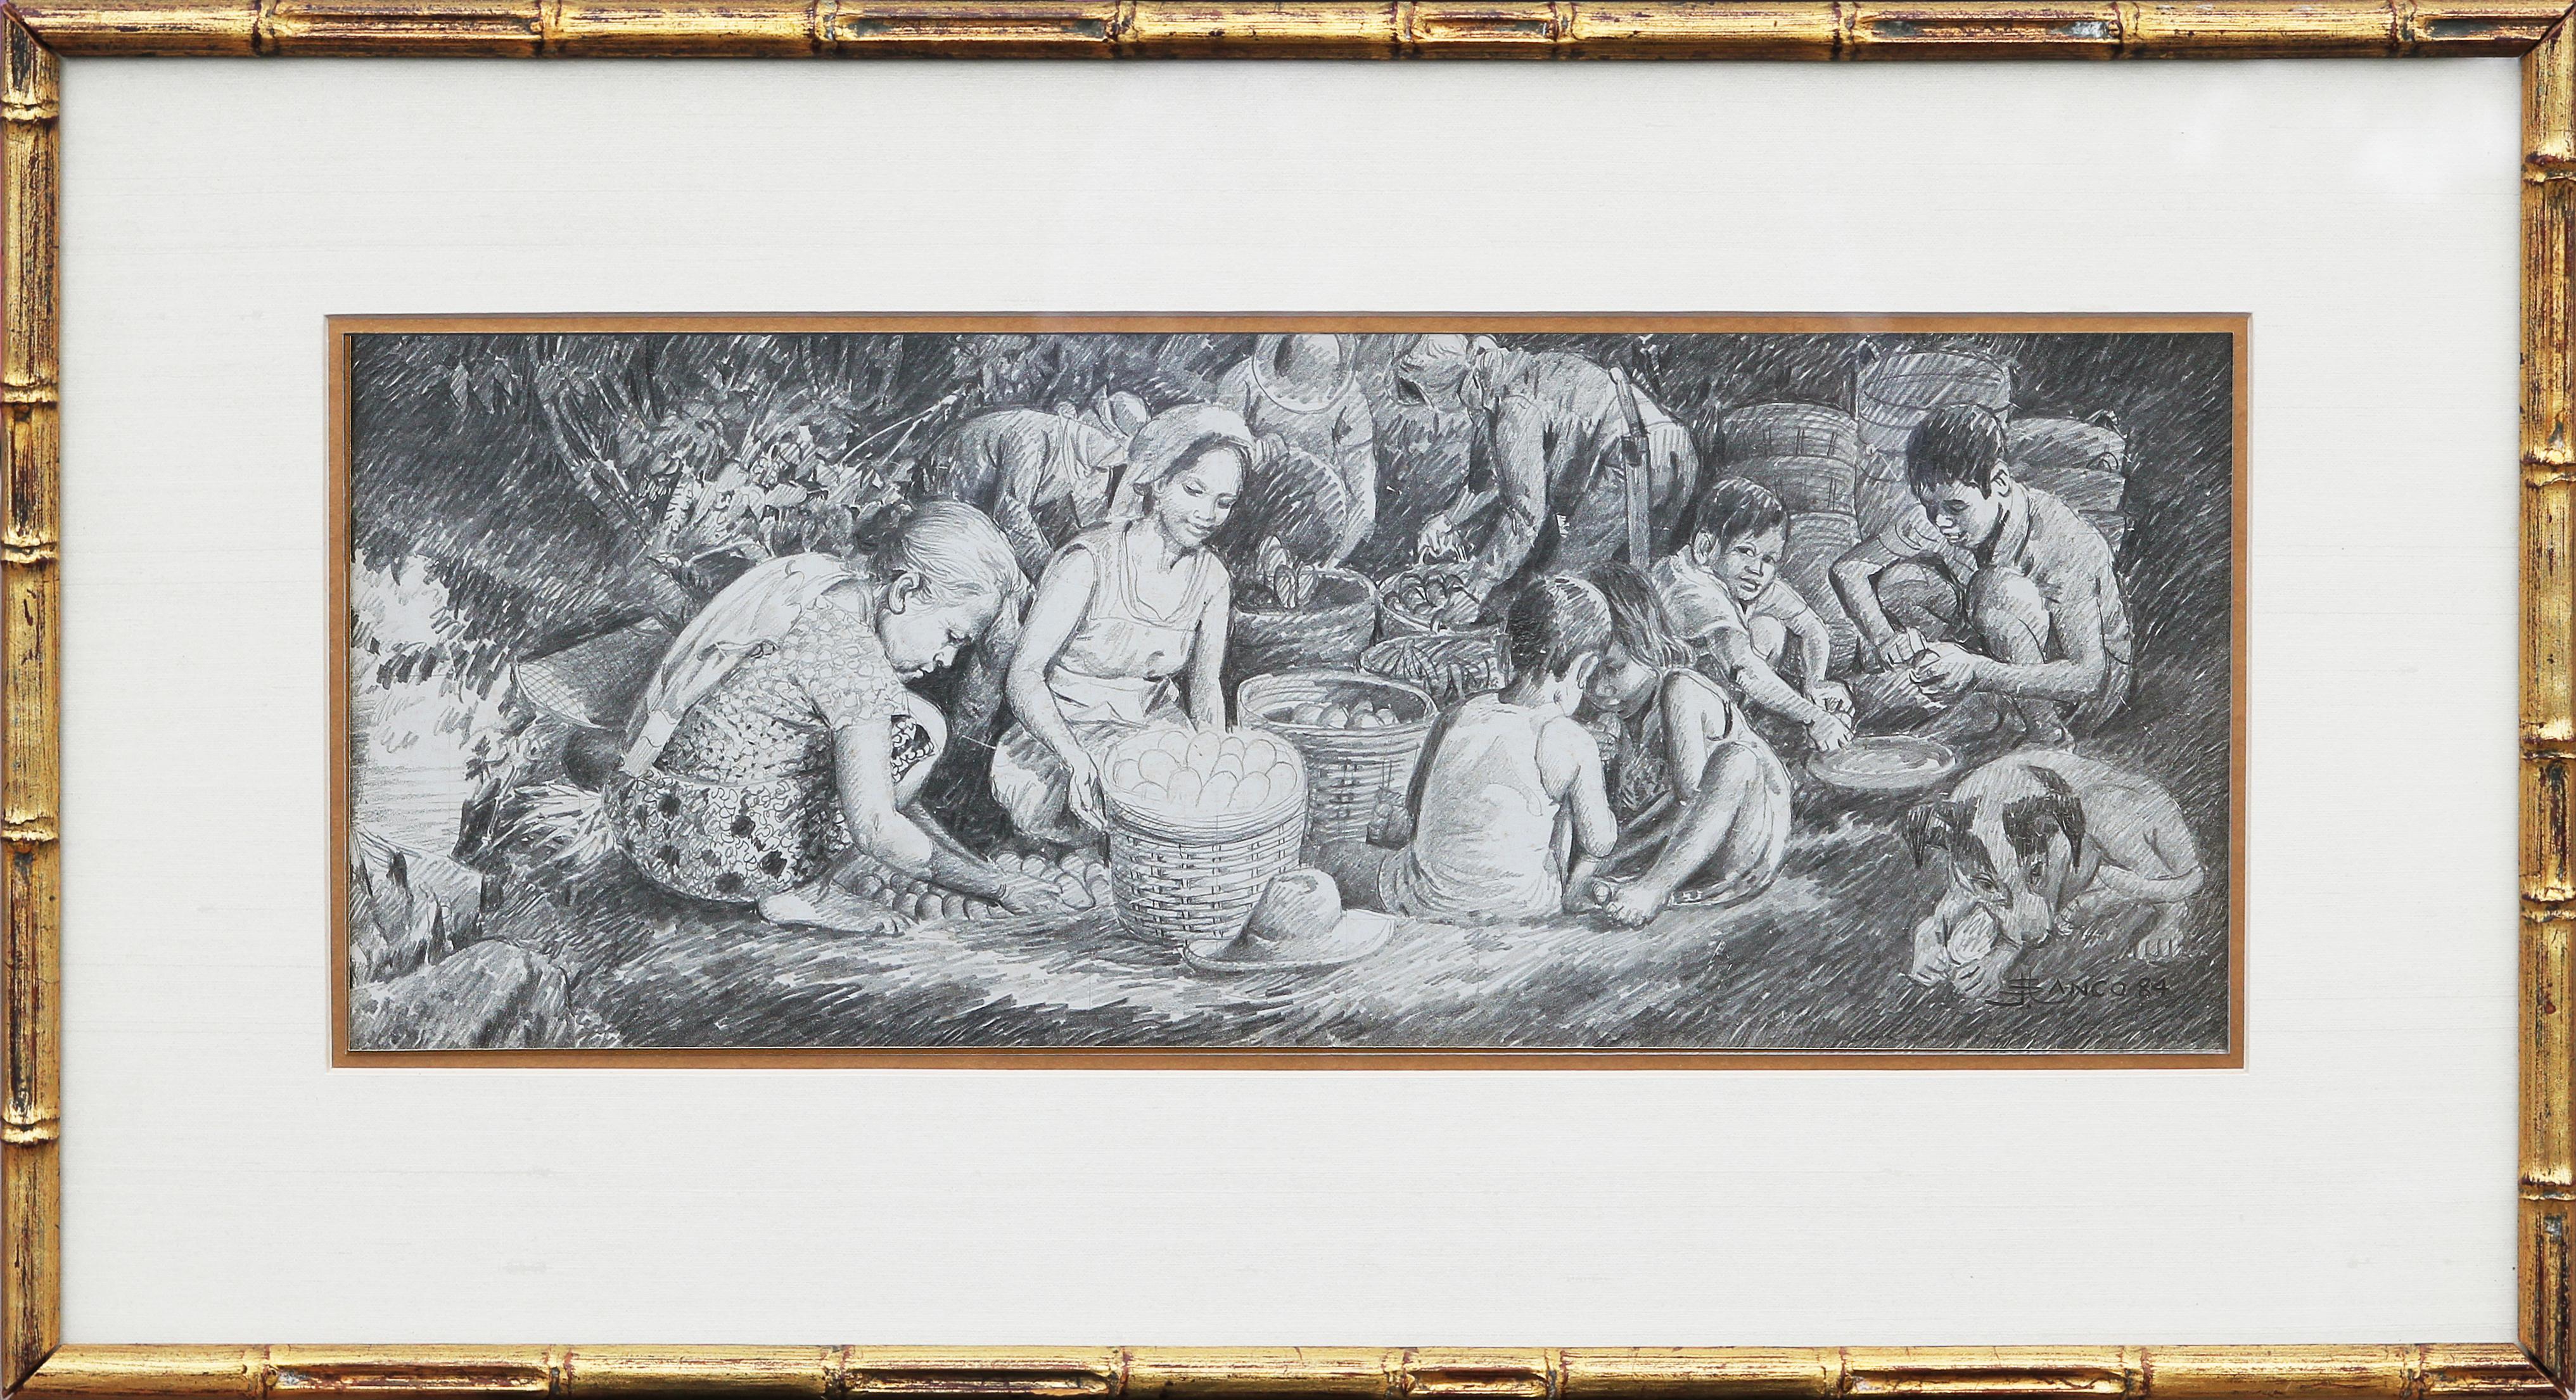 Jose V. Blanco Figurative Art - Filipino Women and Children in a Pastoral Scene Drawing